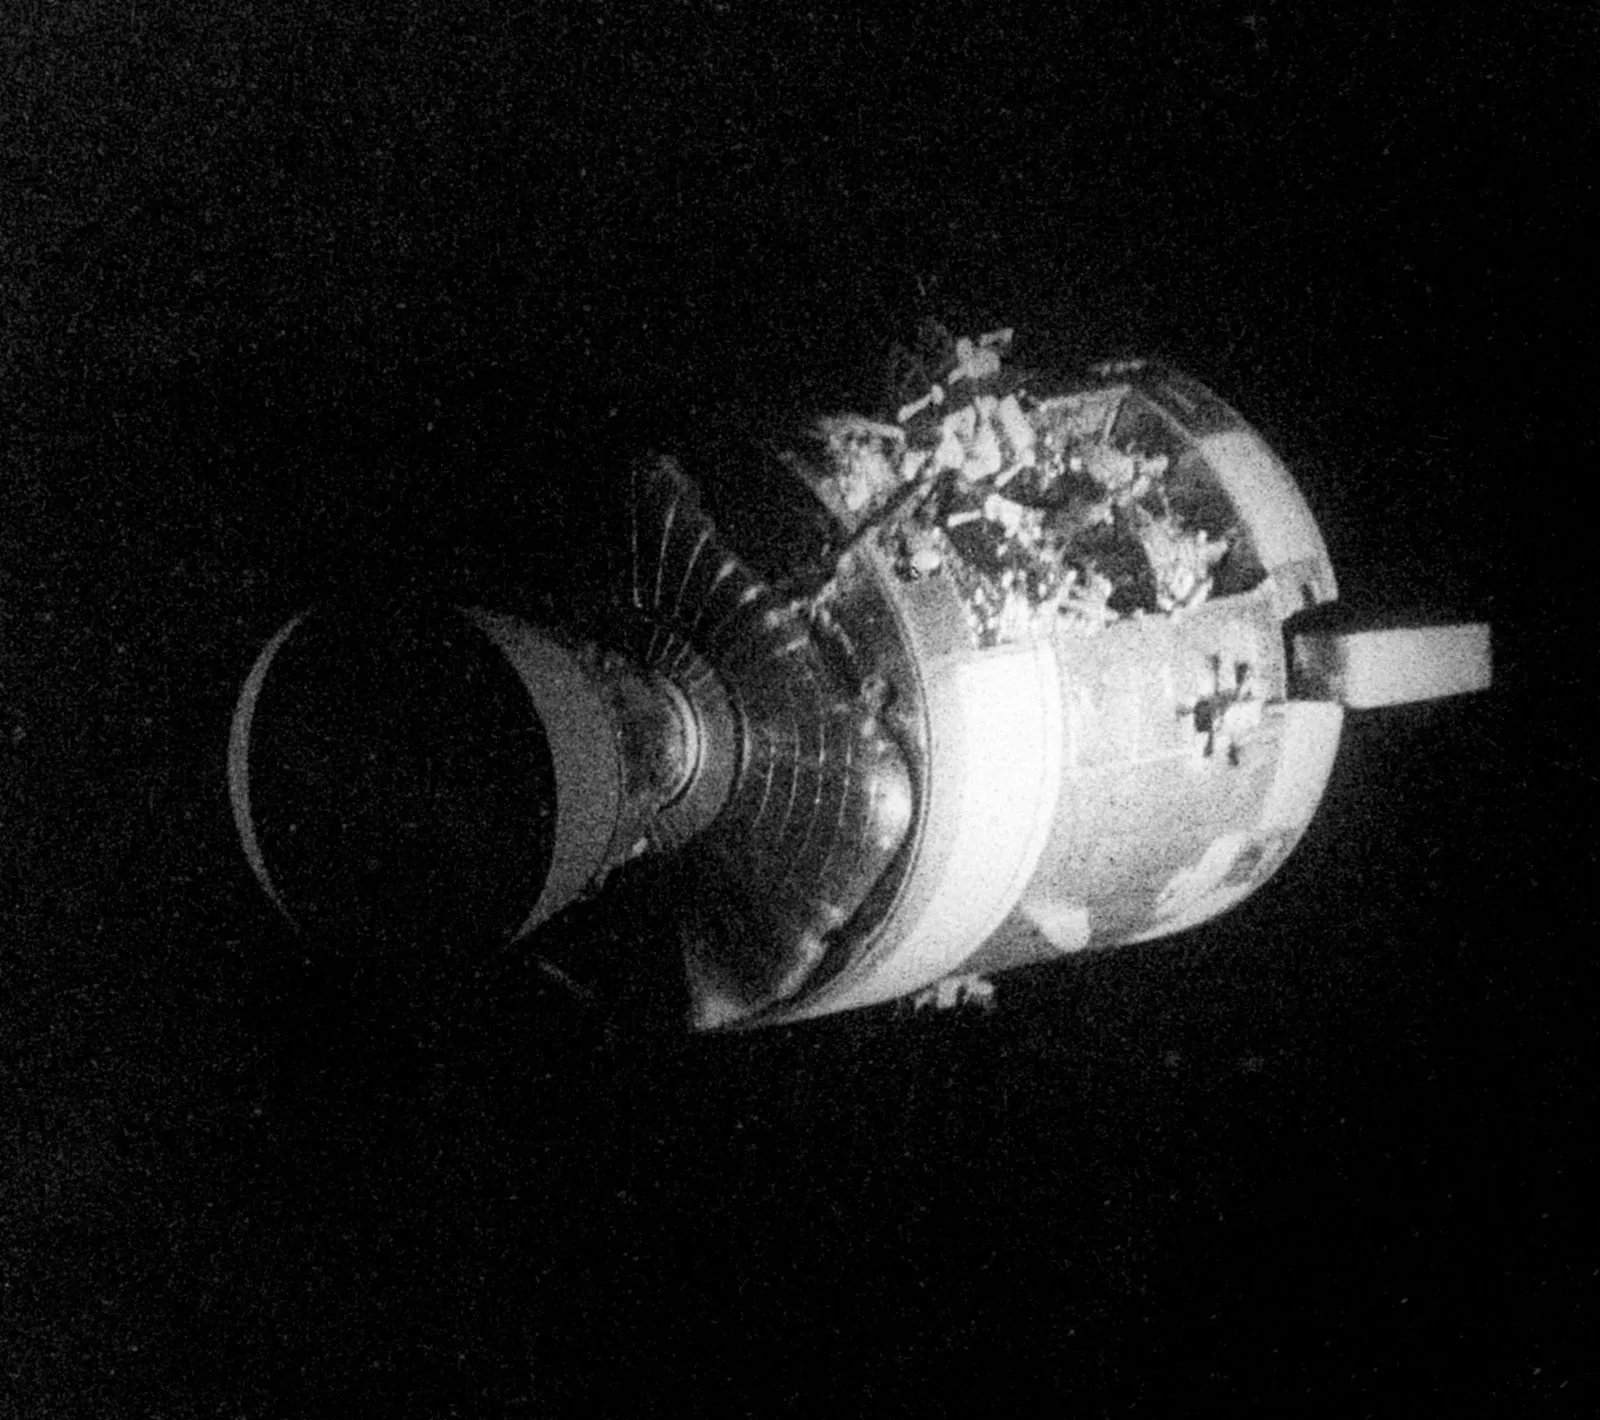 Apollo 13 service module